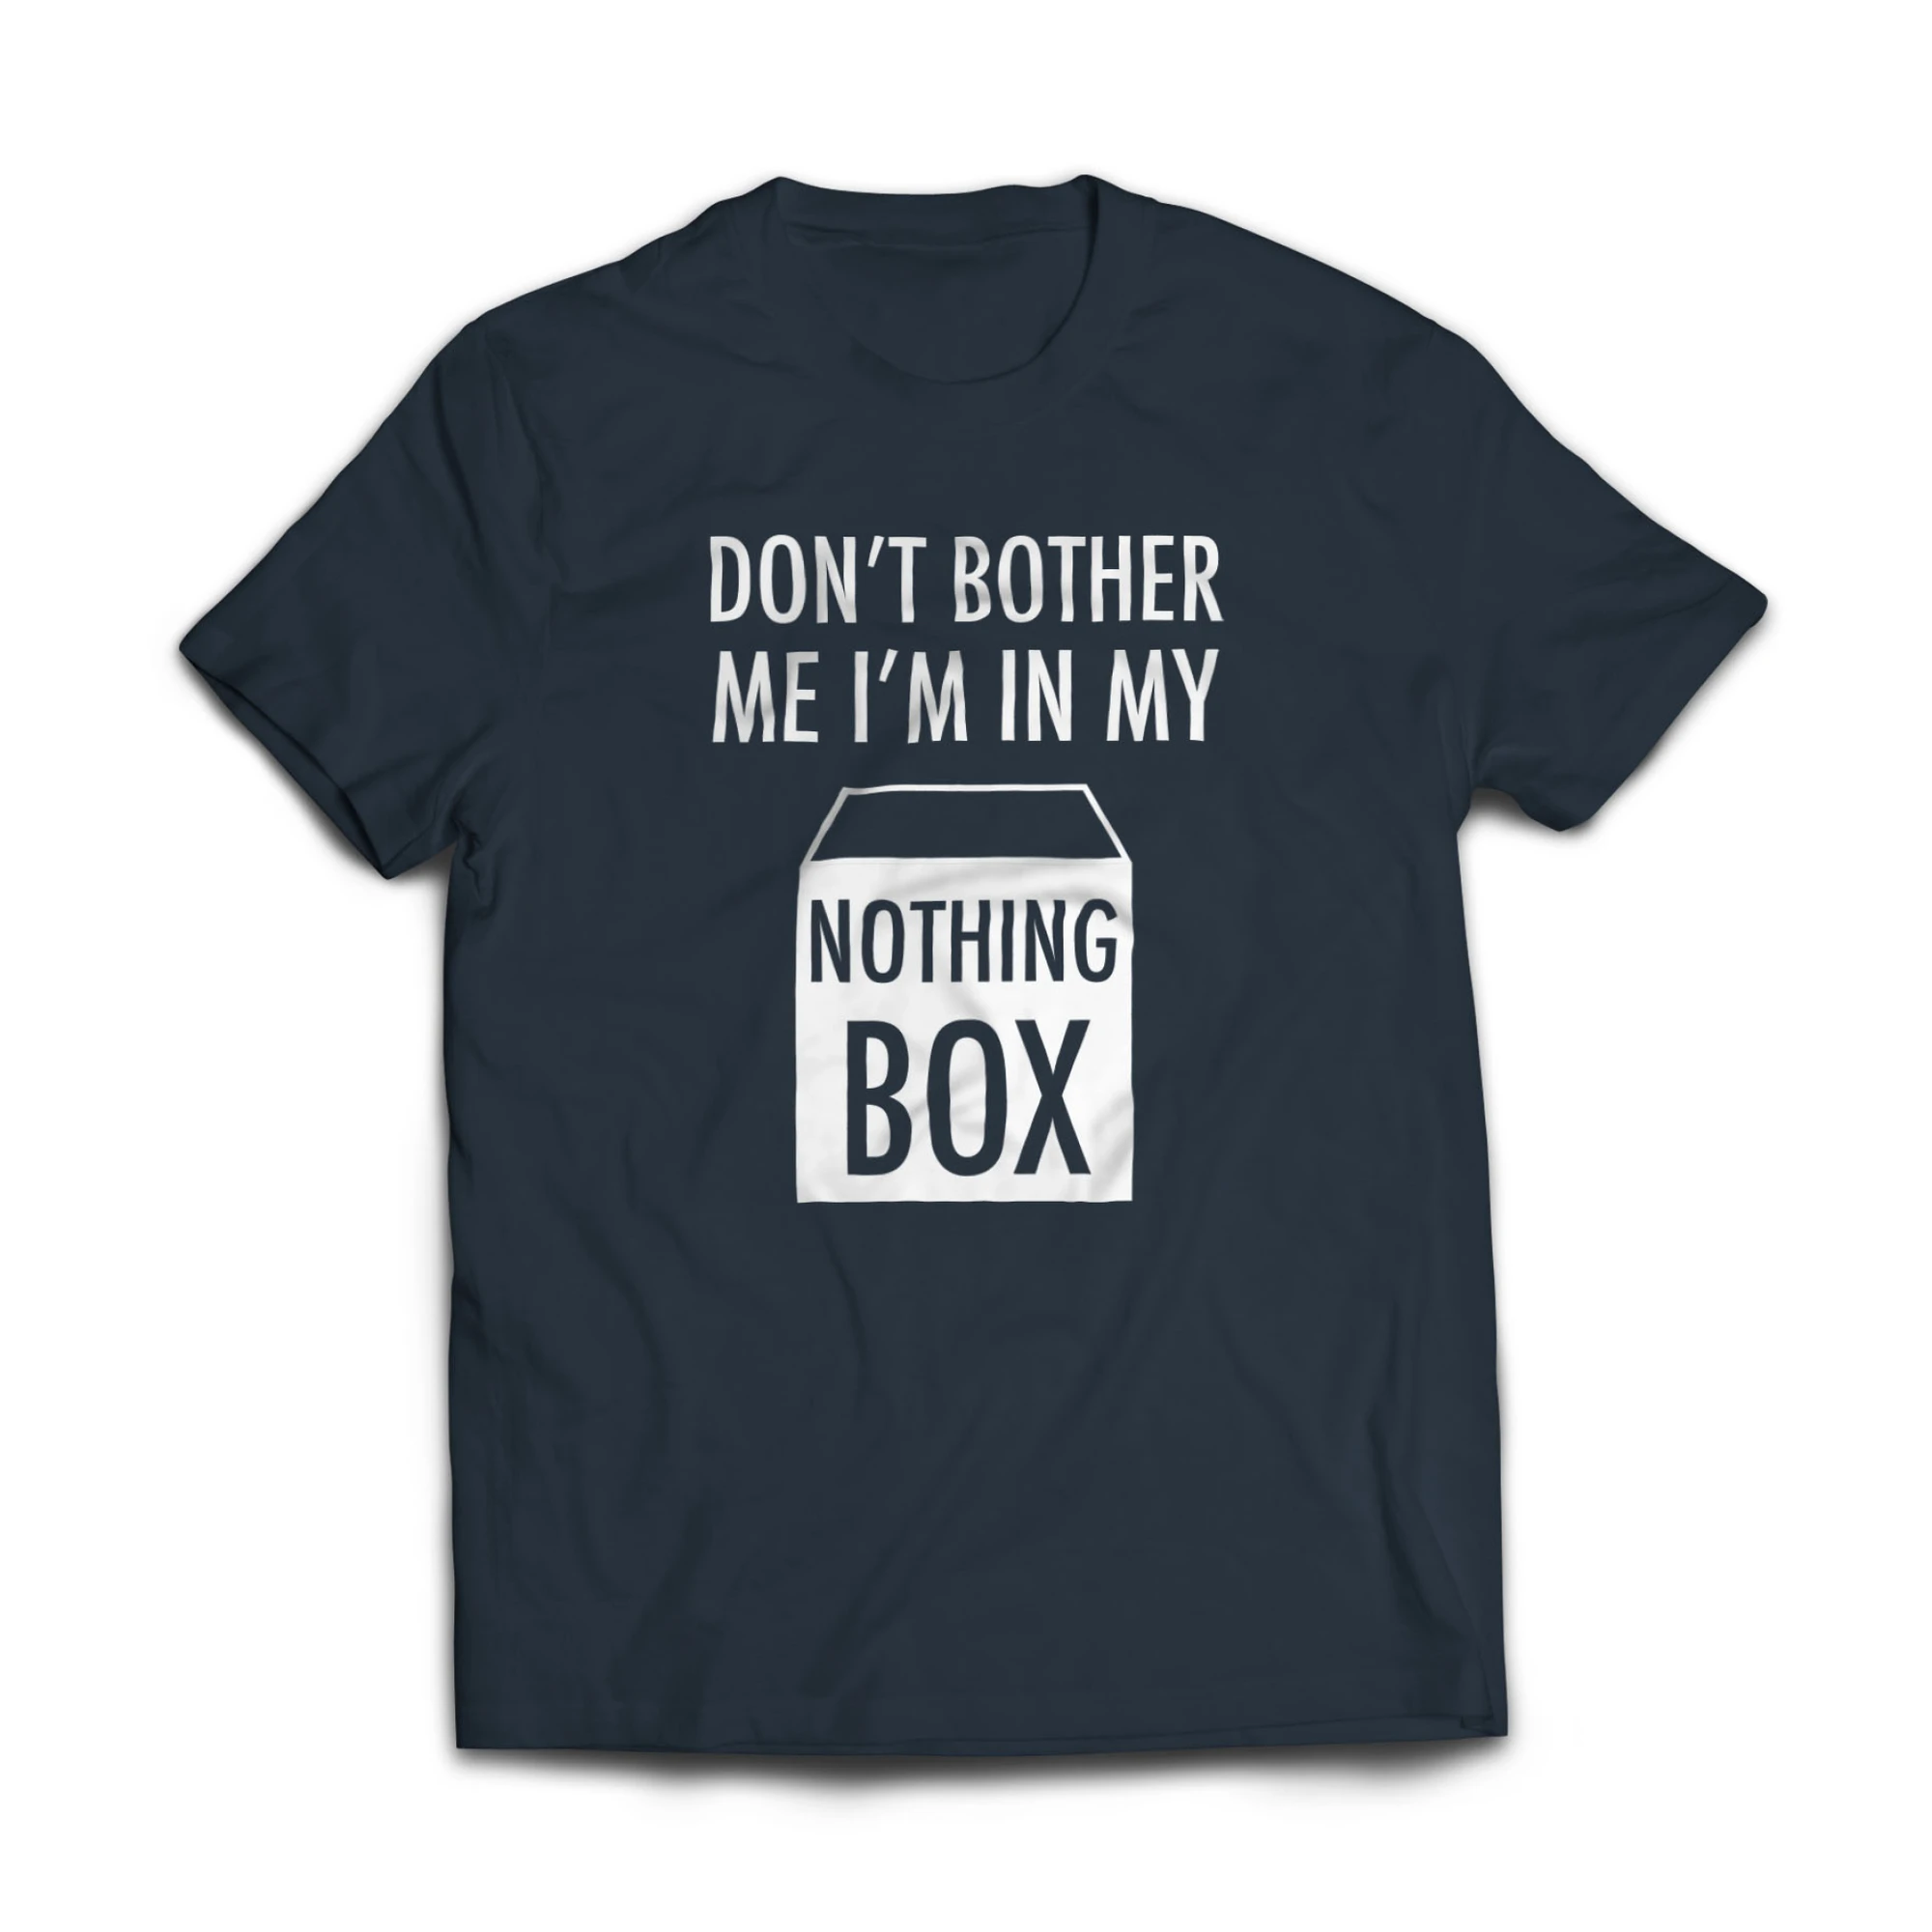 Nothing box